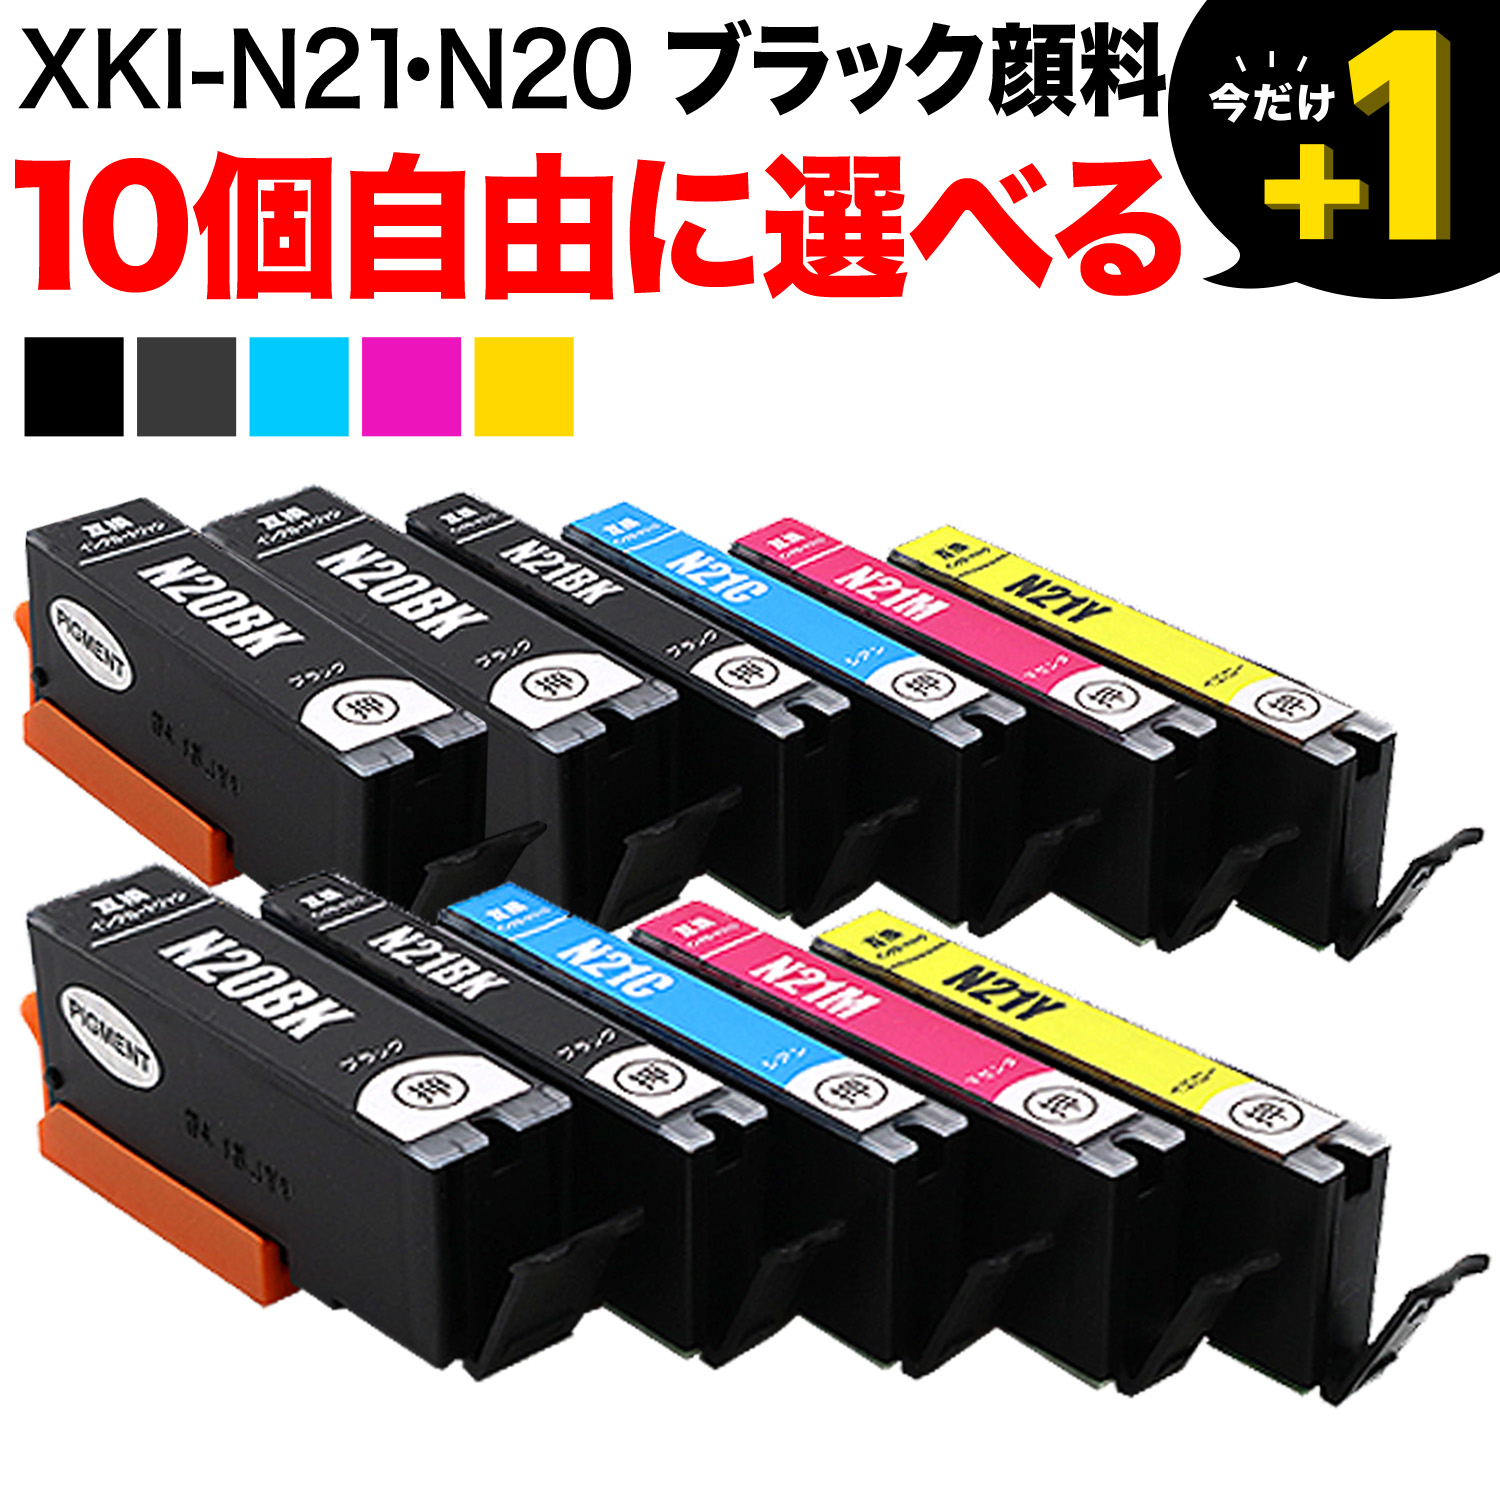 キヤノン用 XKI-N21-N20互換インクカートリッジ 自由選択10個セット